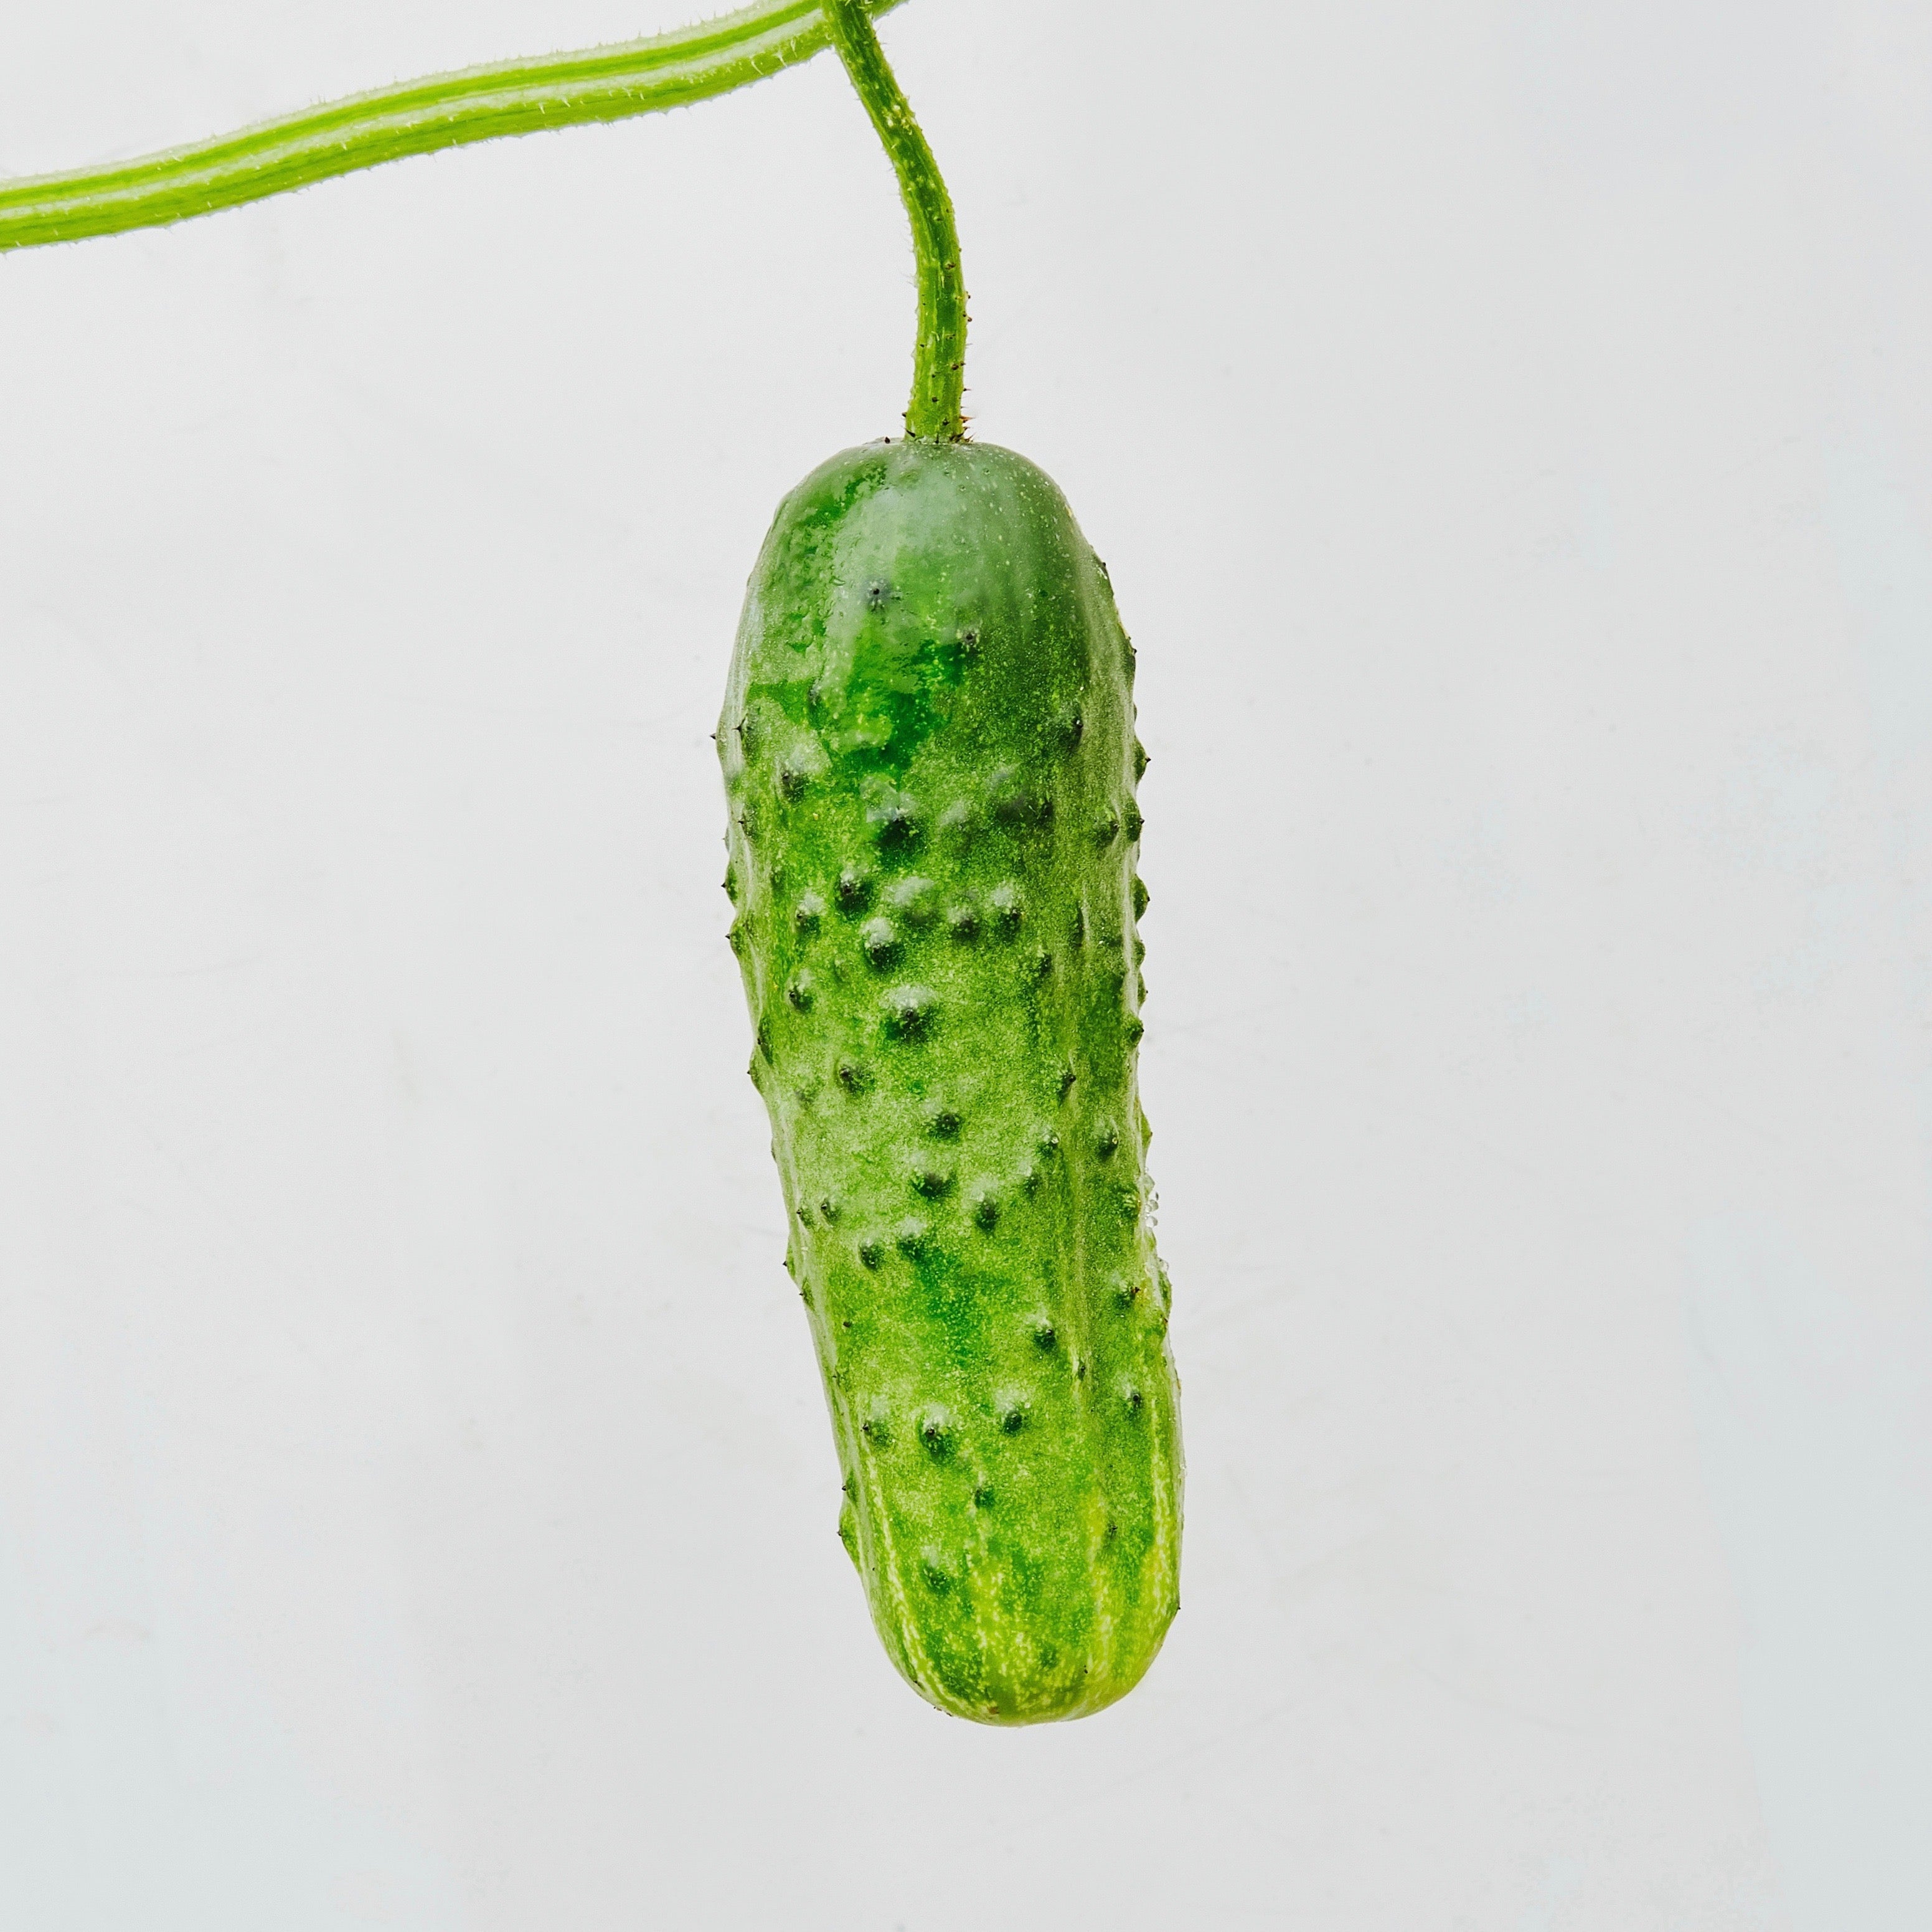 7082 Cucumber Seeds